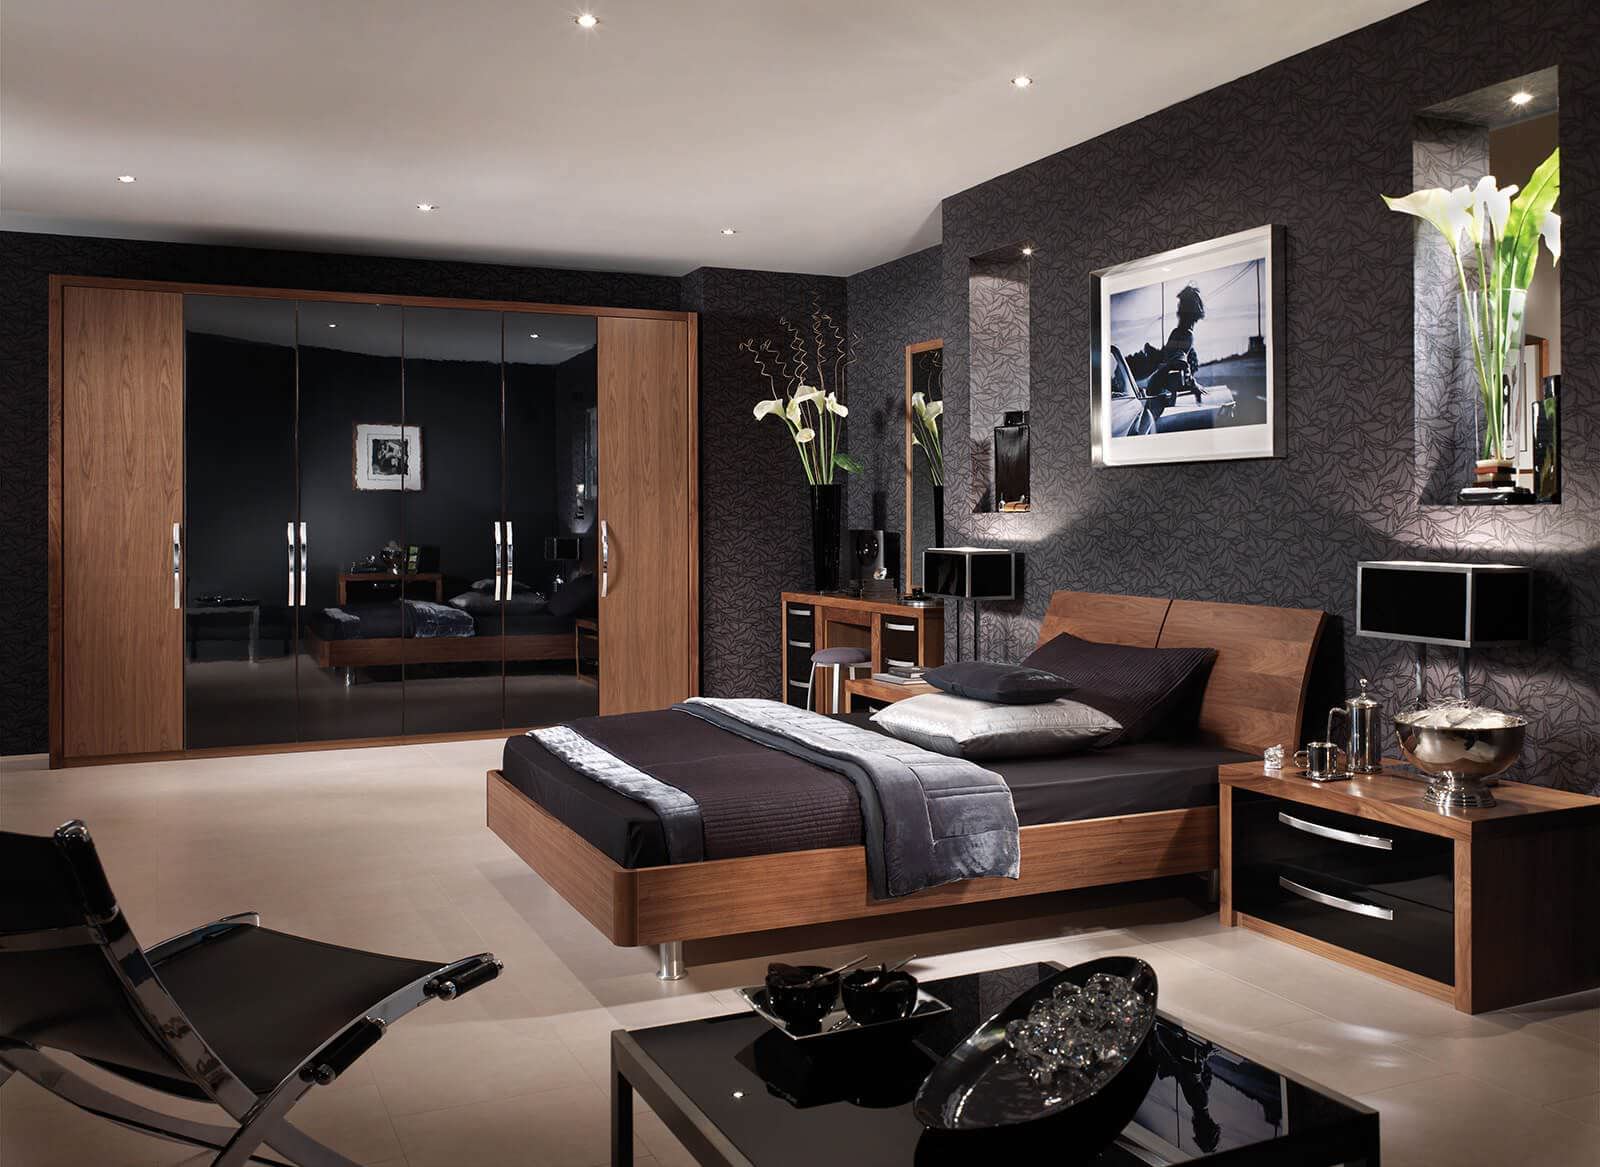 Bộ nội thất gỗ cho phòng ngủ màu đen thêm ấm cúng